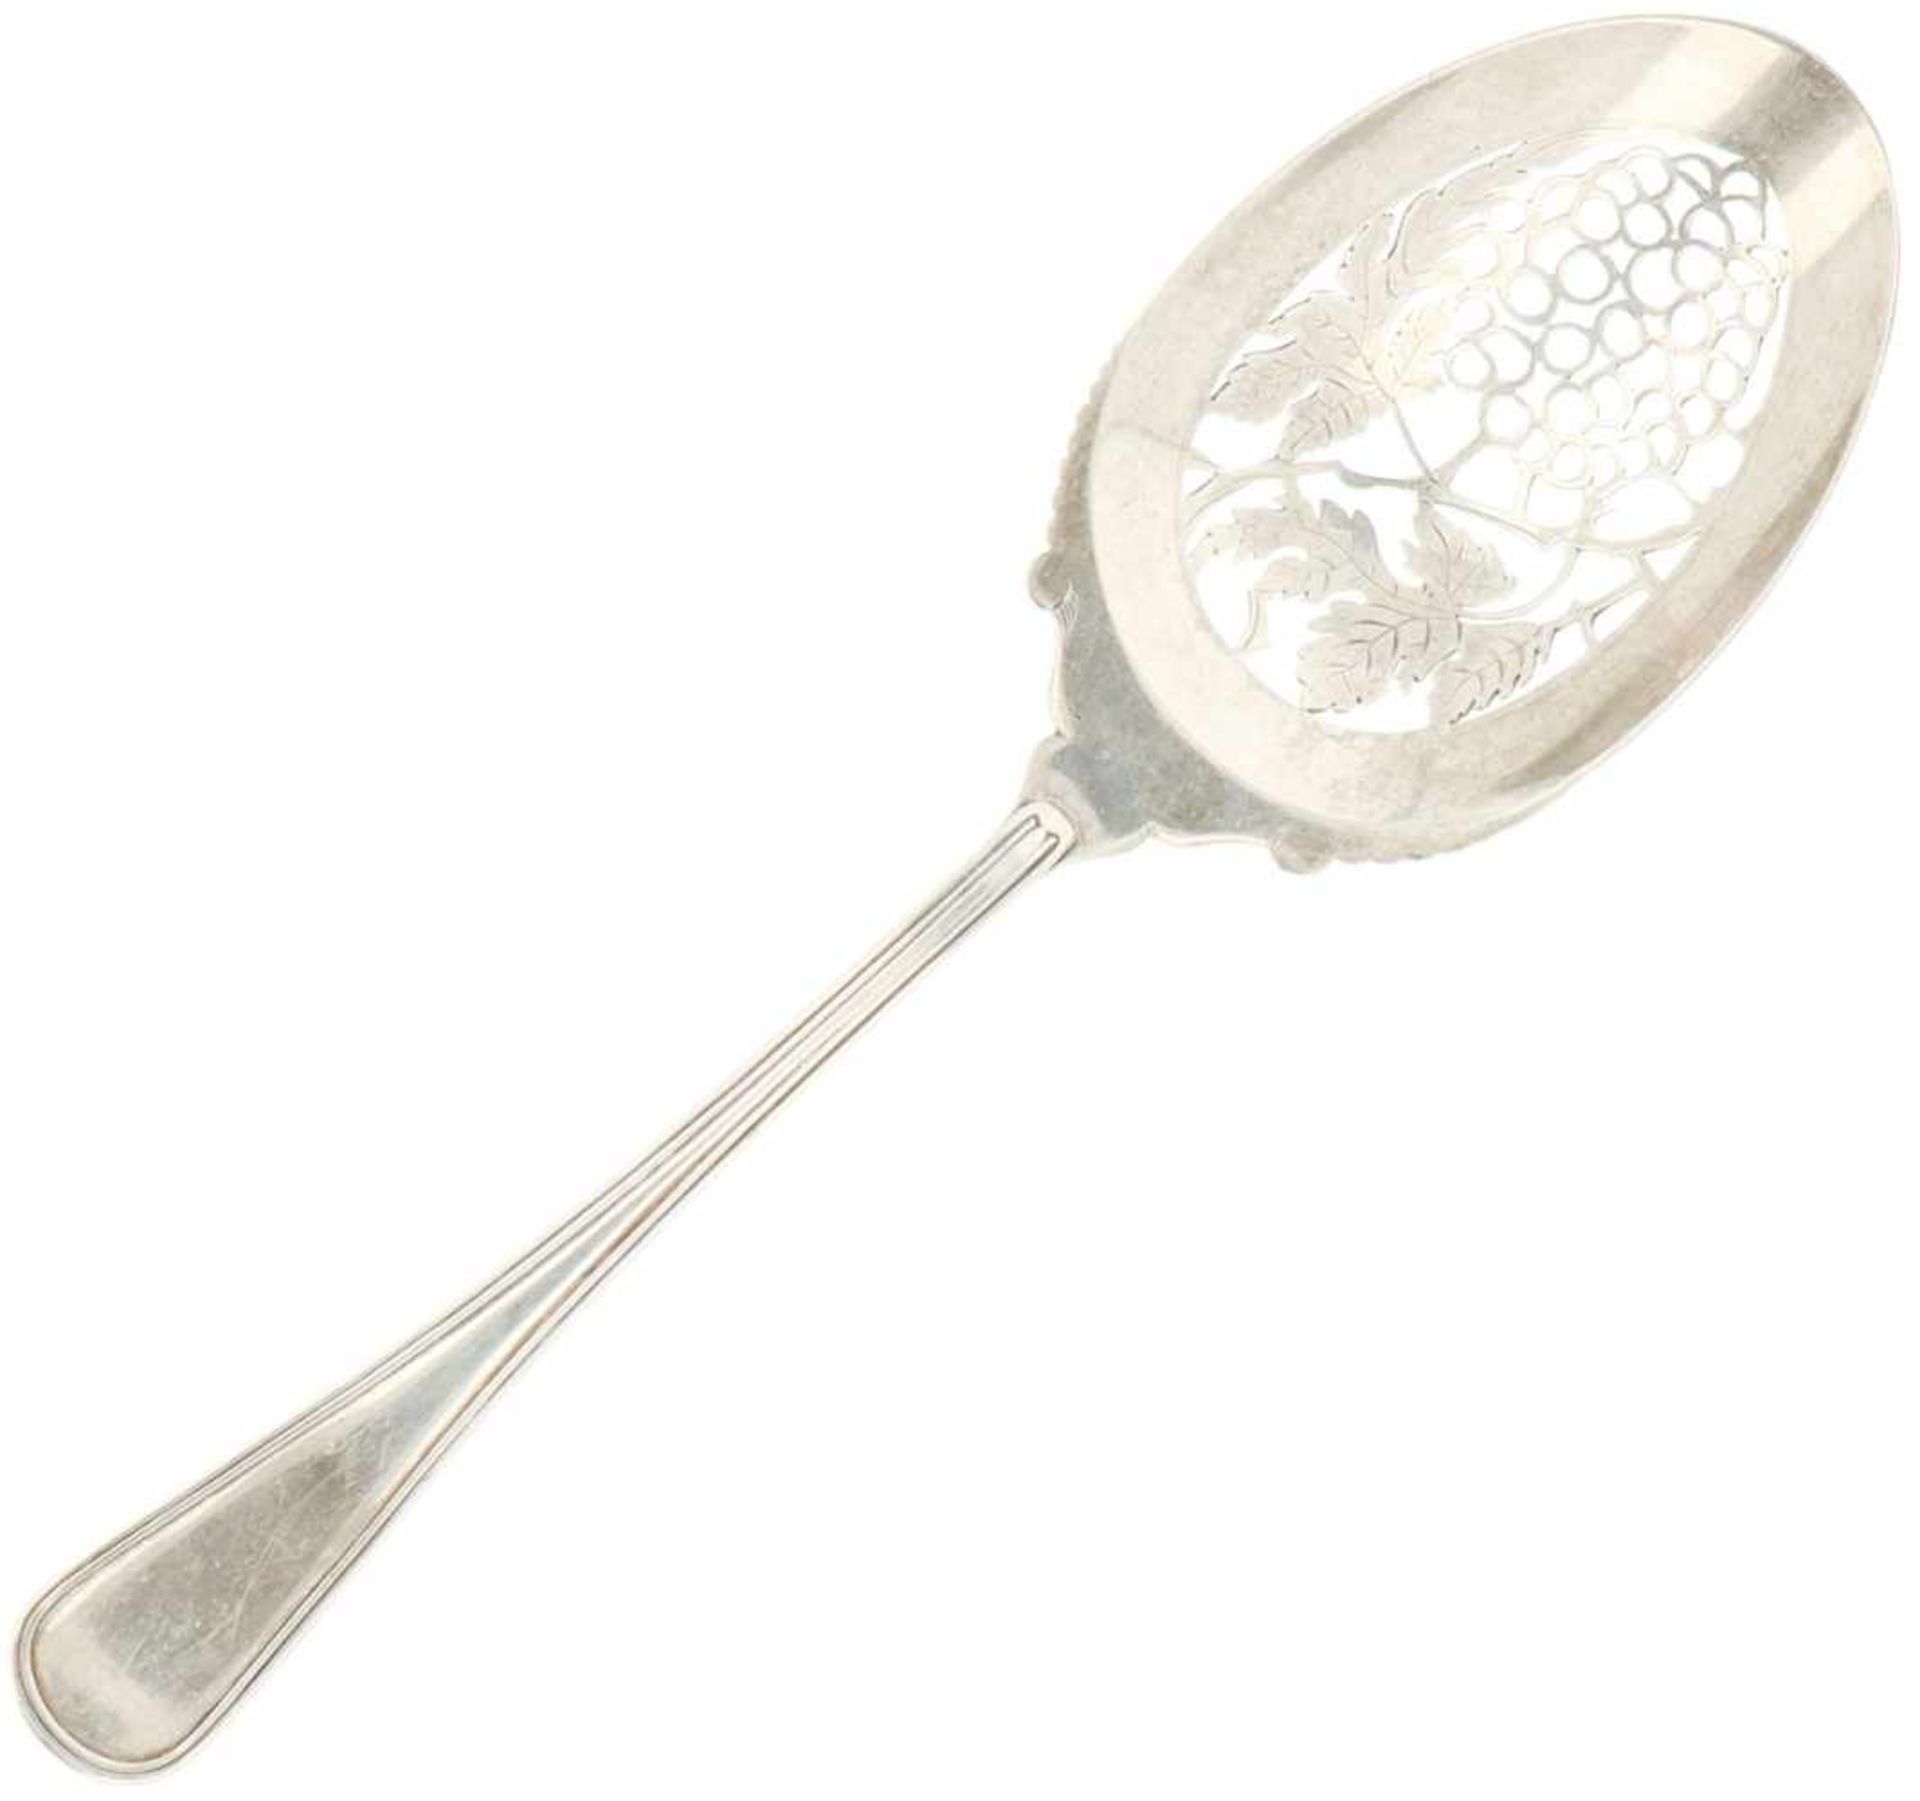 Silver fruit spoon.